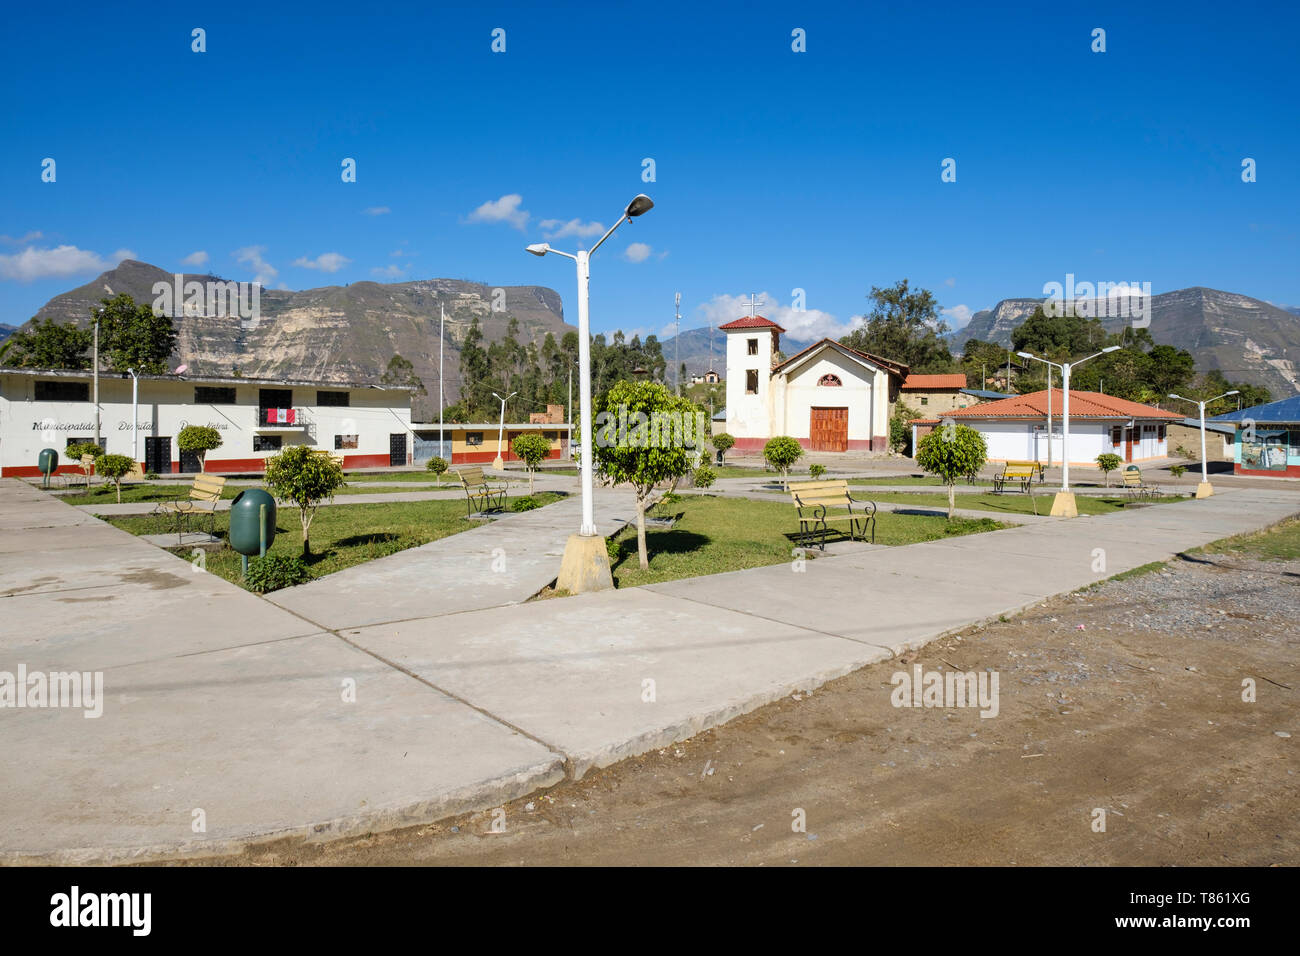 Plaza de Armas im Ort von San Pablo, Start der Gocta Wasserfall Wanderung in der Provinz Chachapoyas, Amazonas Region, Peru Stockfoto